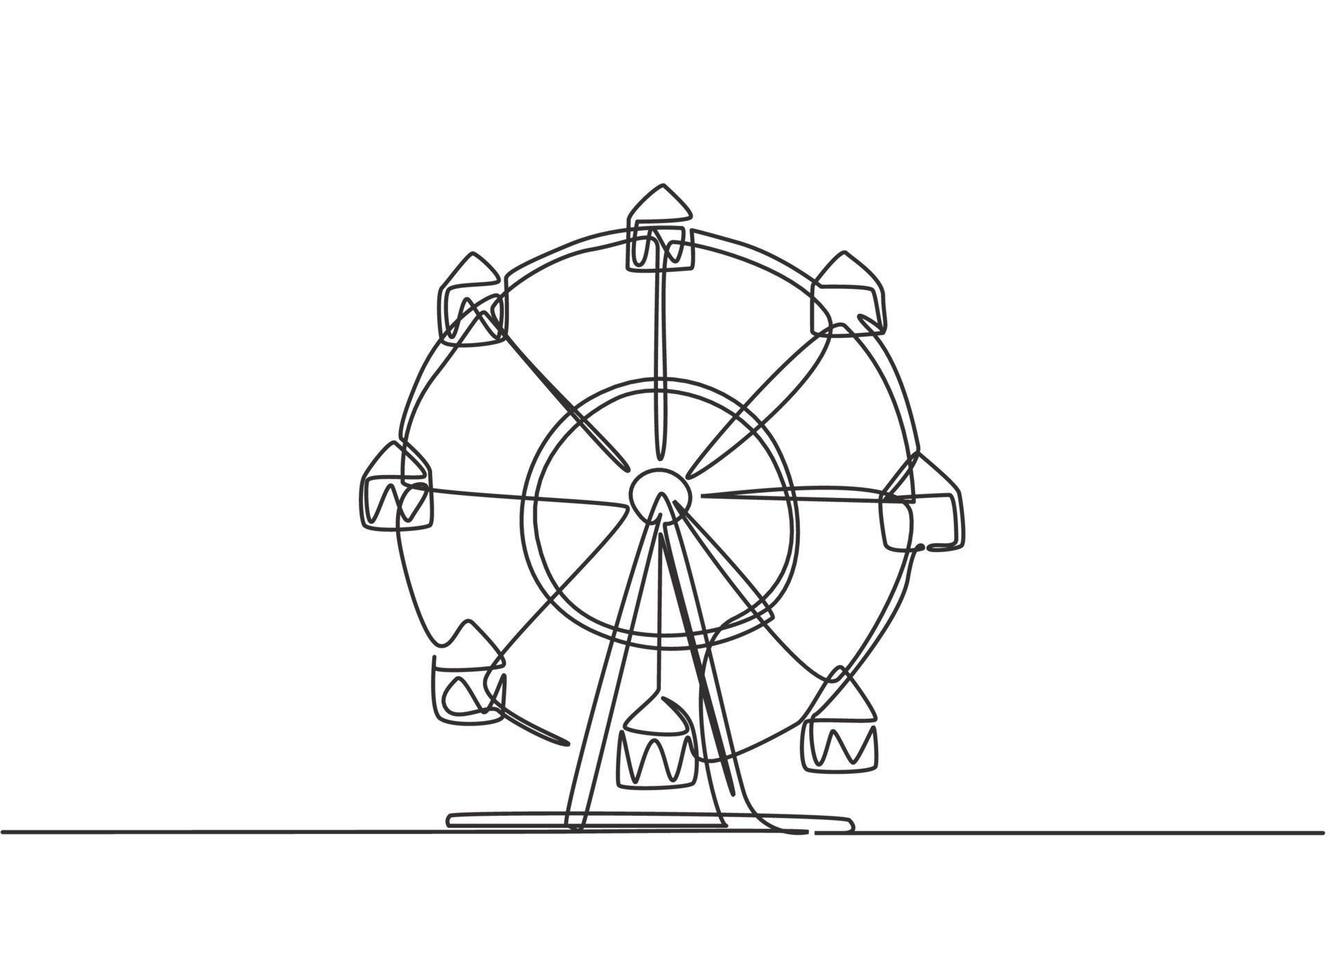 dessin continu d'une ligne d'une grande roue dans un parc d'attractions, un cercle circulaire tournant haut dans le ciel. jeu amusant au festival de fête foraine publique. illustration graphique de vecteur de conception de dessin à une seule ligne